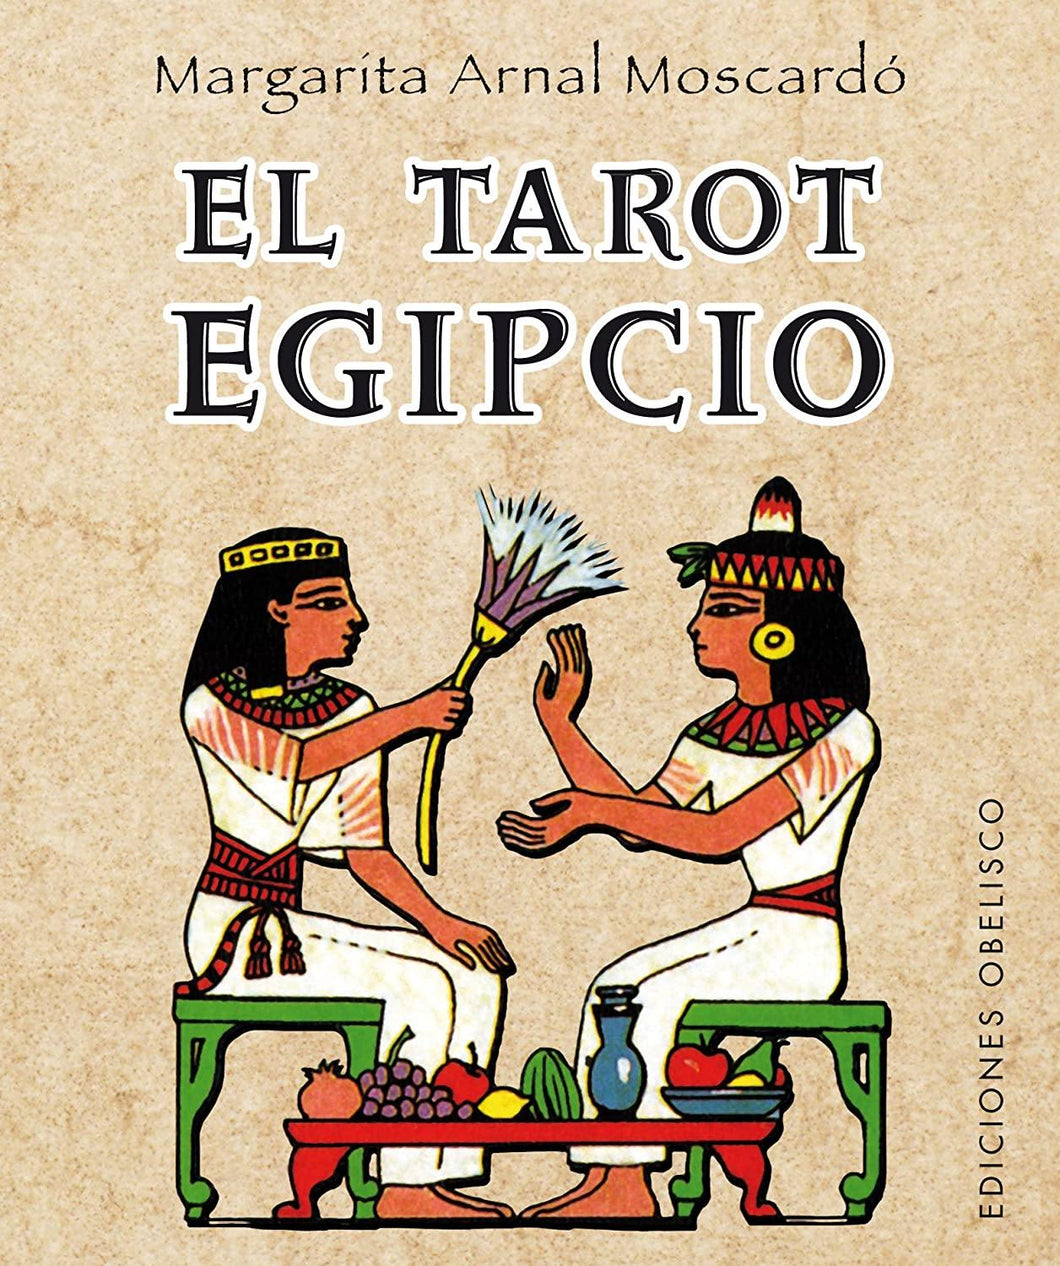 El tarot egipcio + cartas - Antevasin's Store